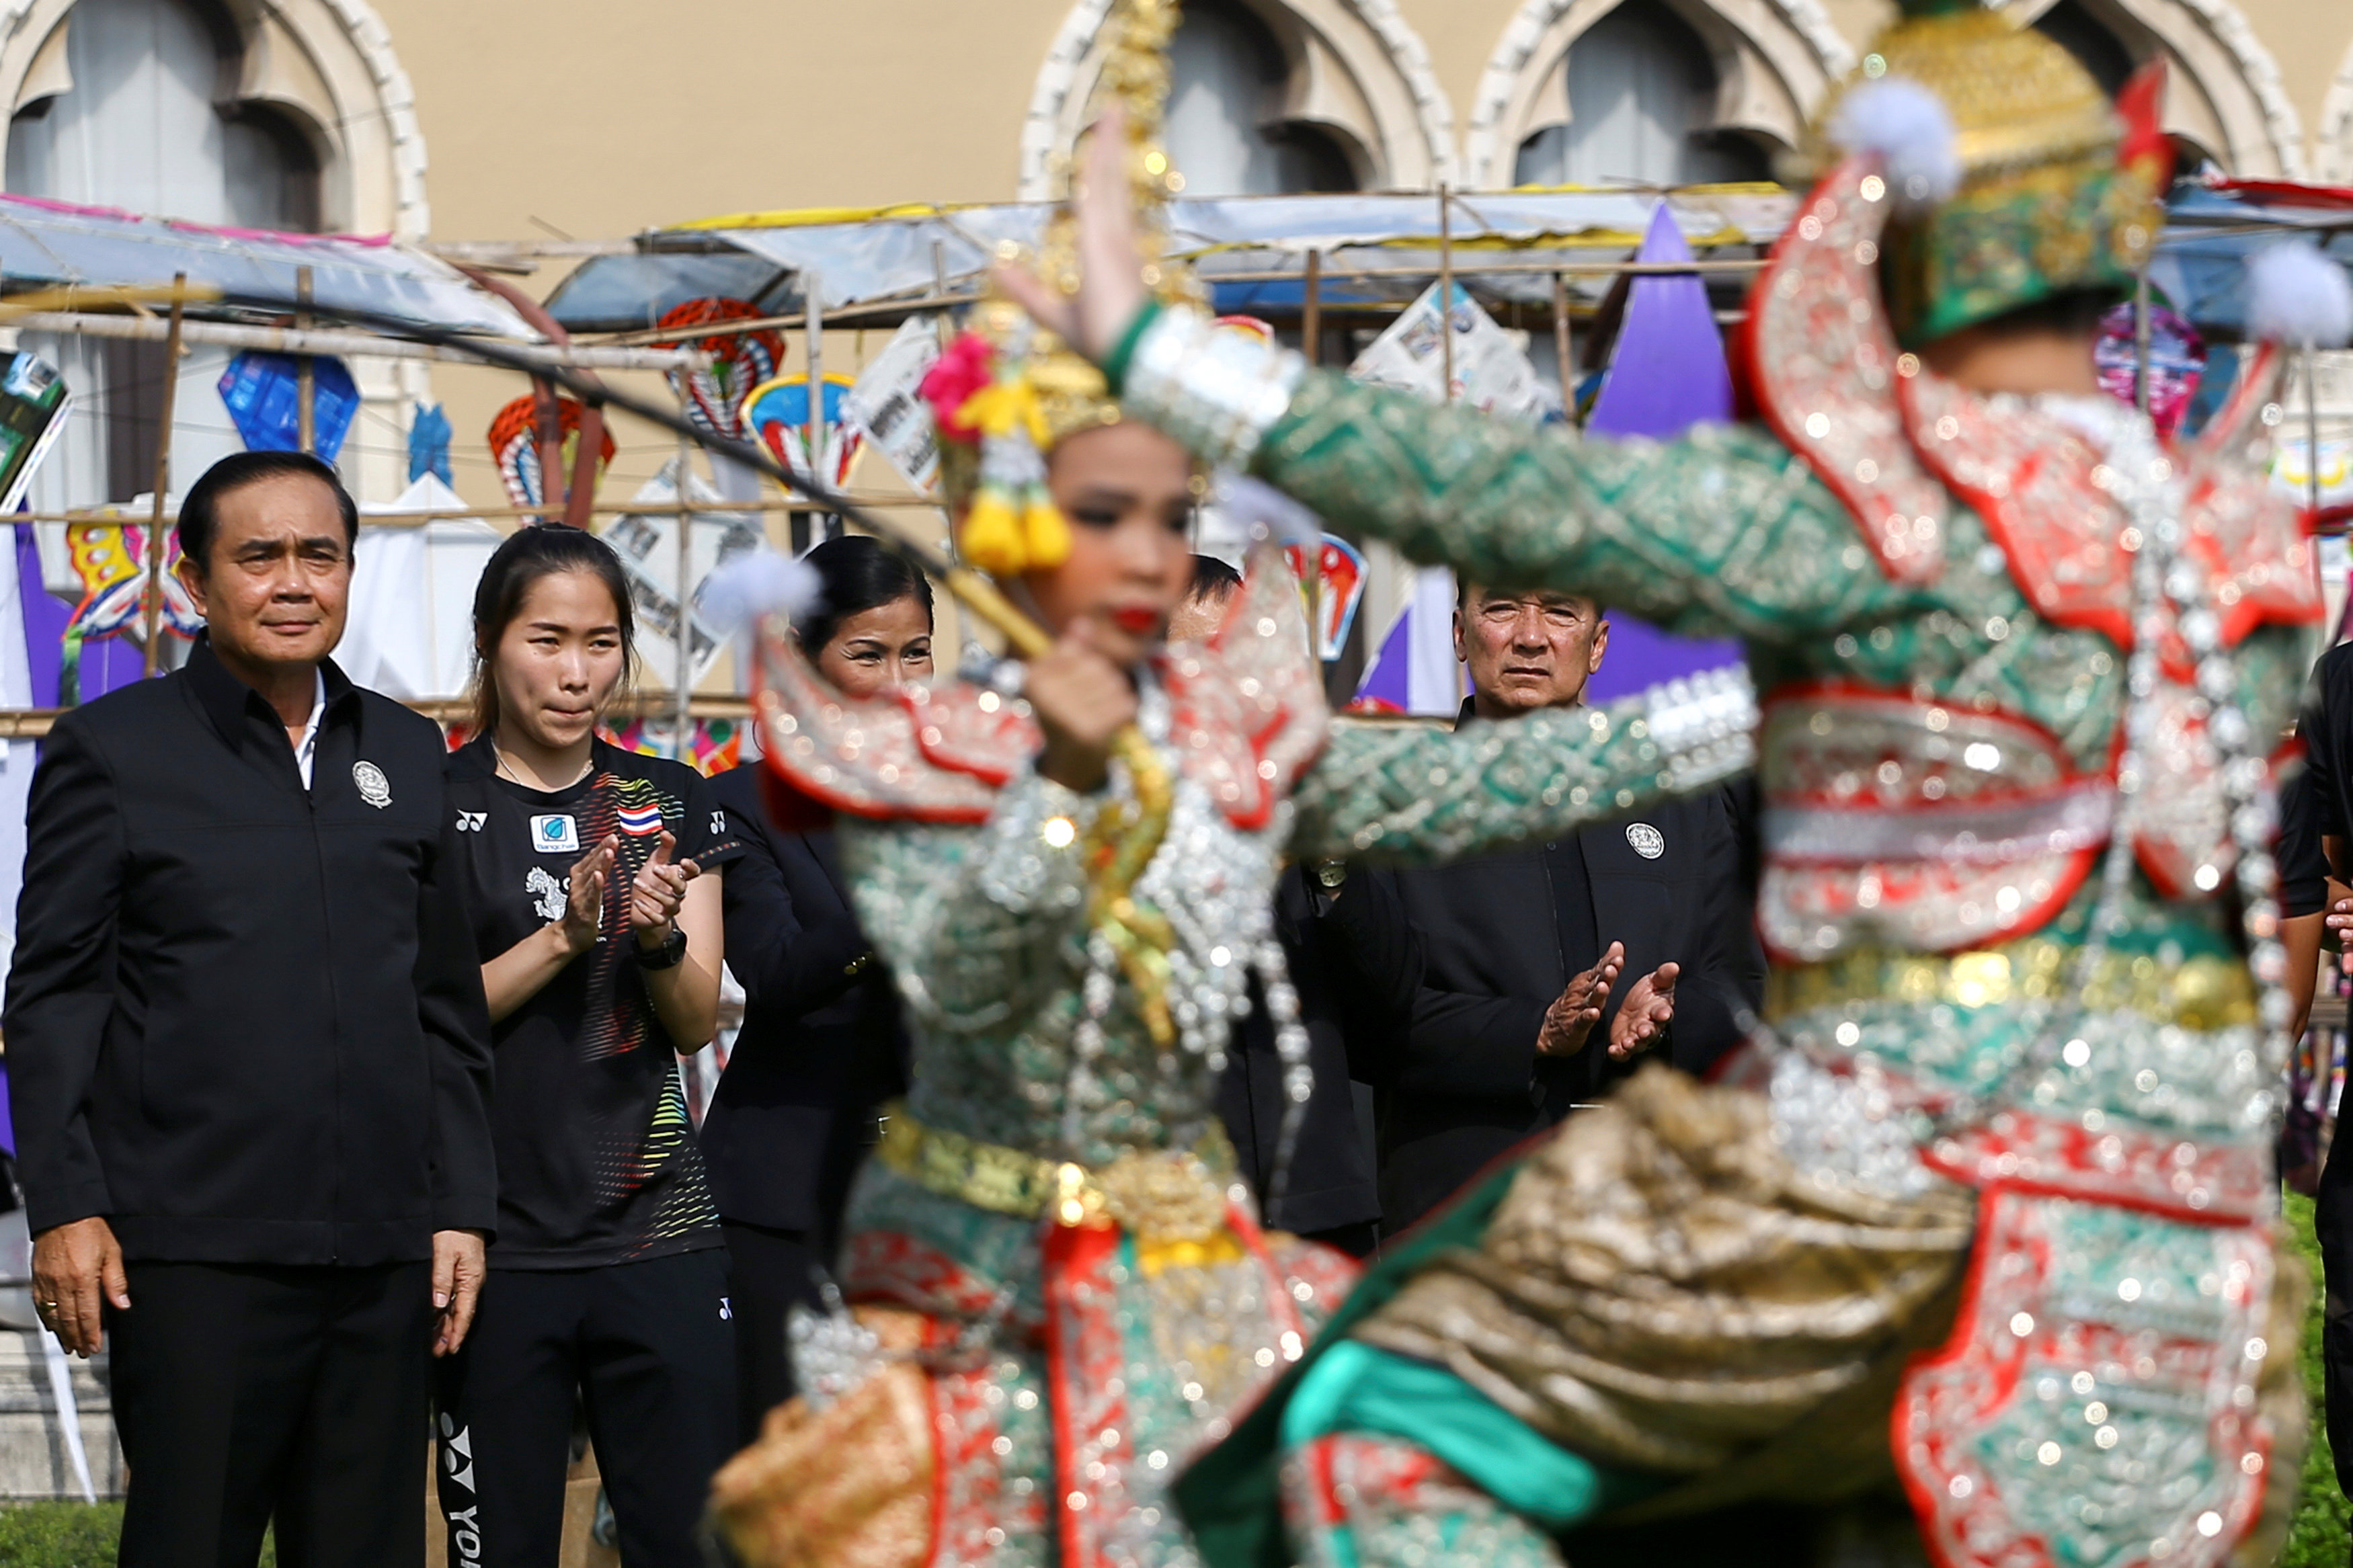 عروض راقصة فى احتفالات تايلاند بيوم الطفل فى مقر الحكومة ببانكوك